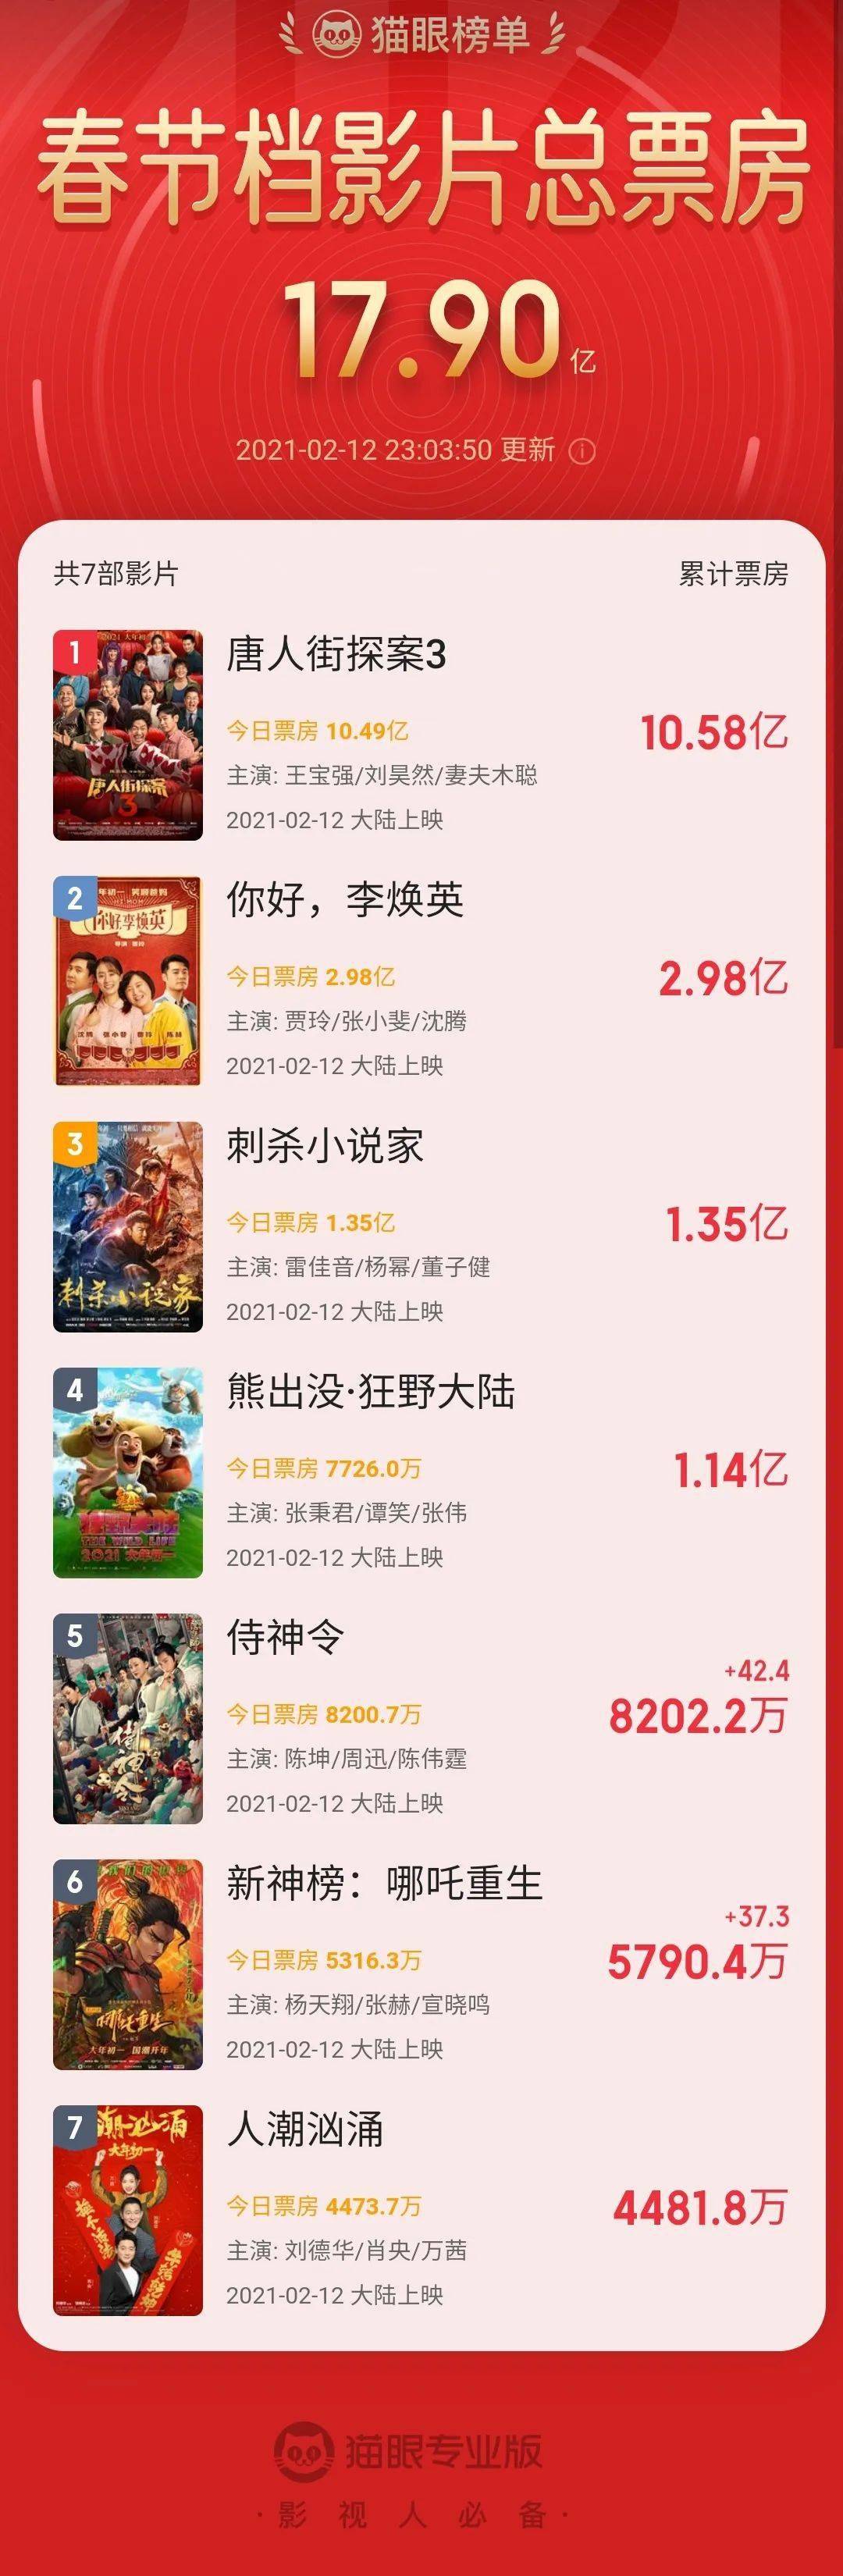 《唐人街探案3》票房破10亿,领跑2021电影贺岁档!